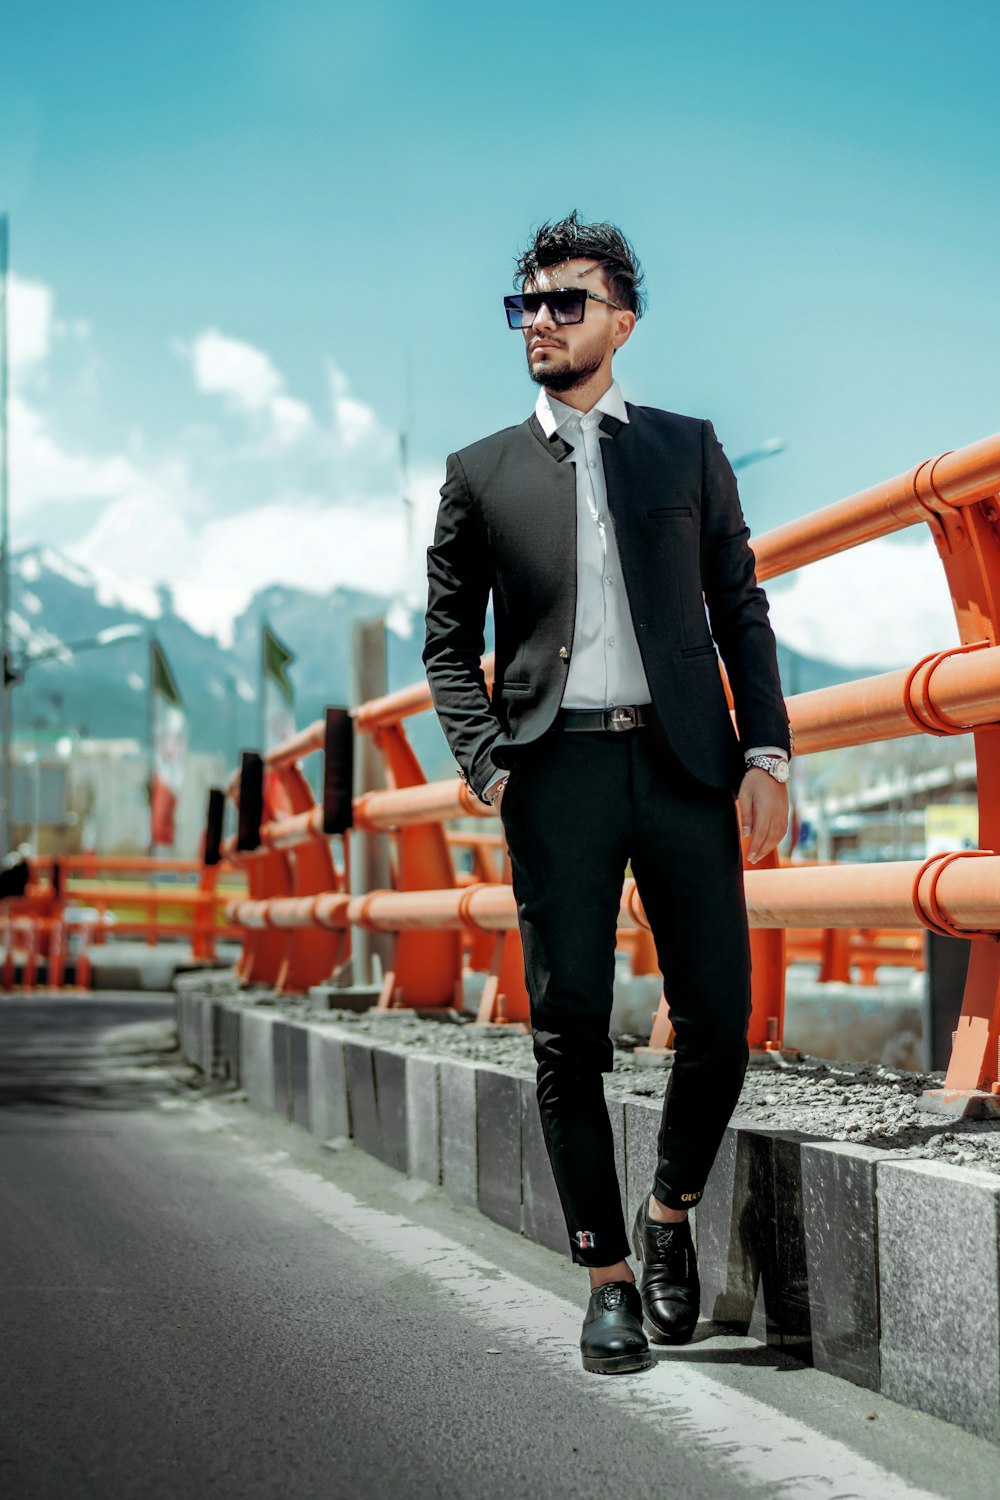 Mann im schwarzen Anzug tagsüber auf grauer Betonstraße